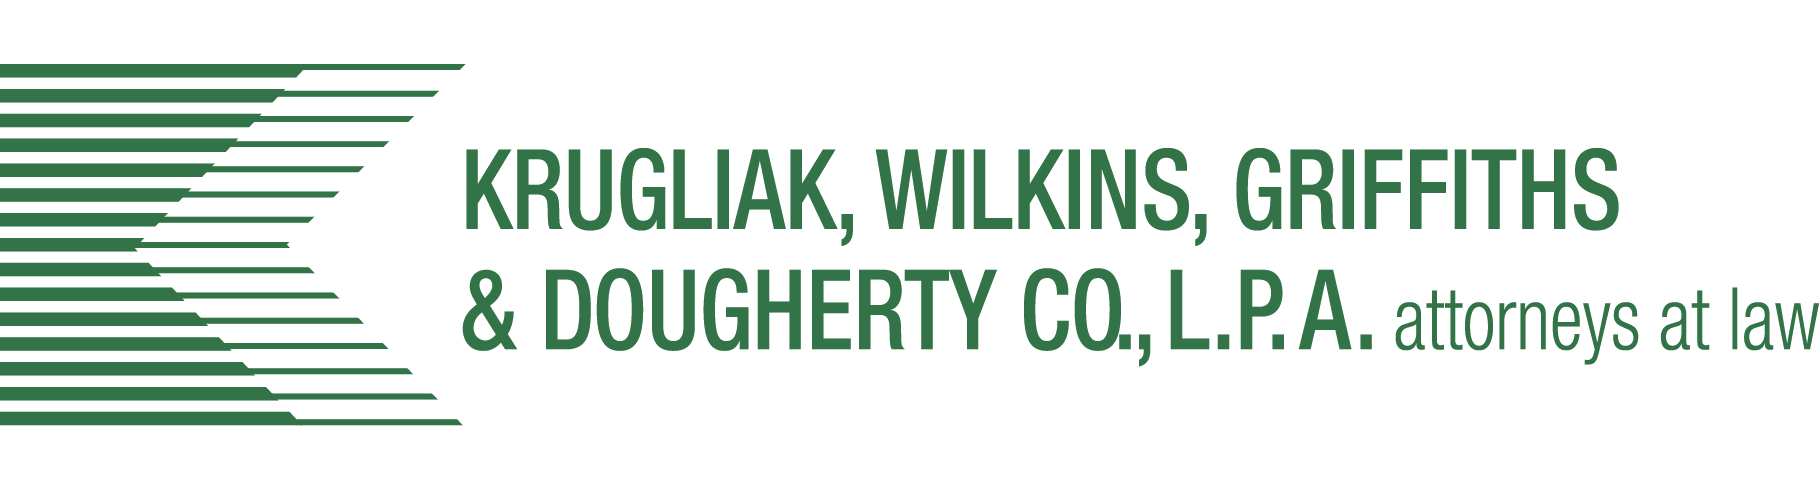 Krugliak, Wilkins, Griffiths & Dougherty Co., L.P.A.